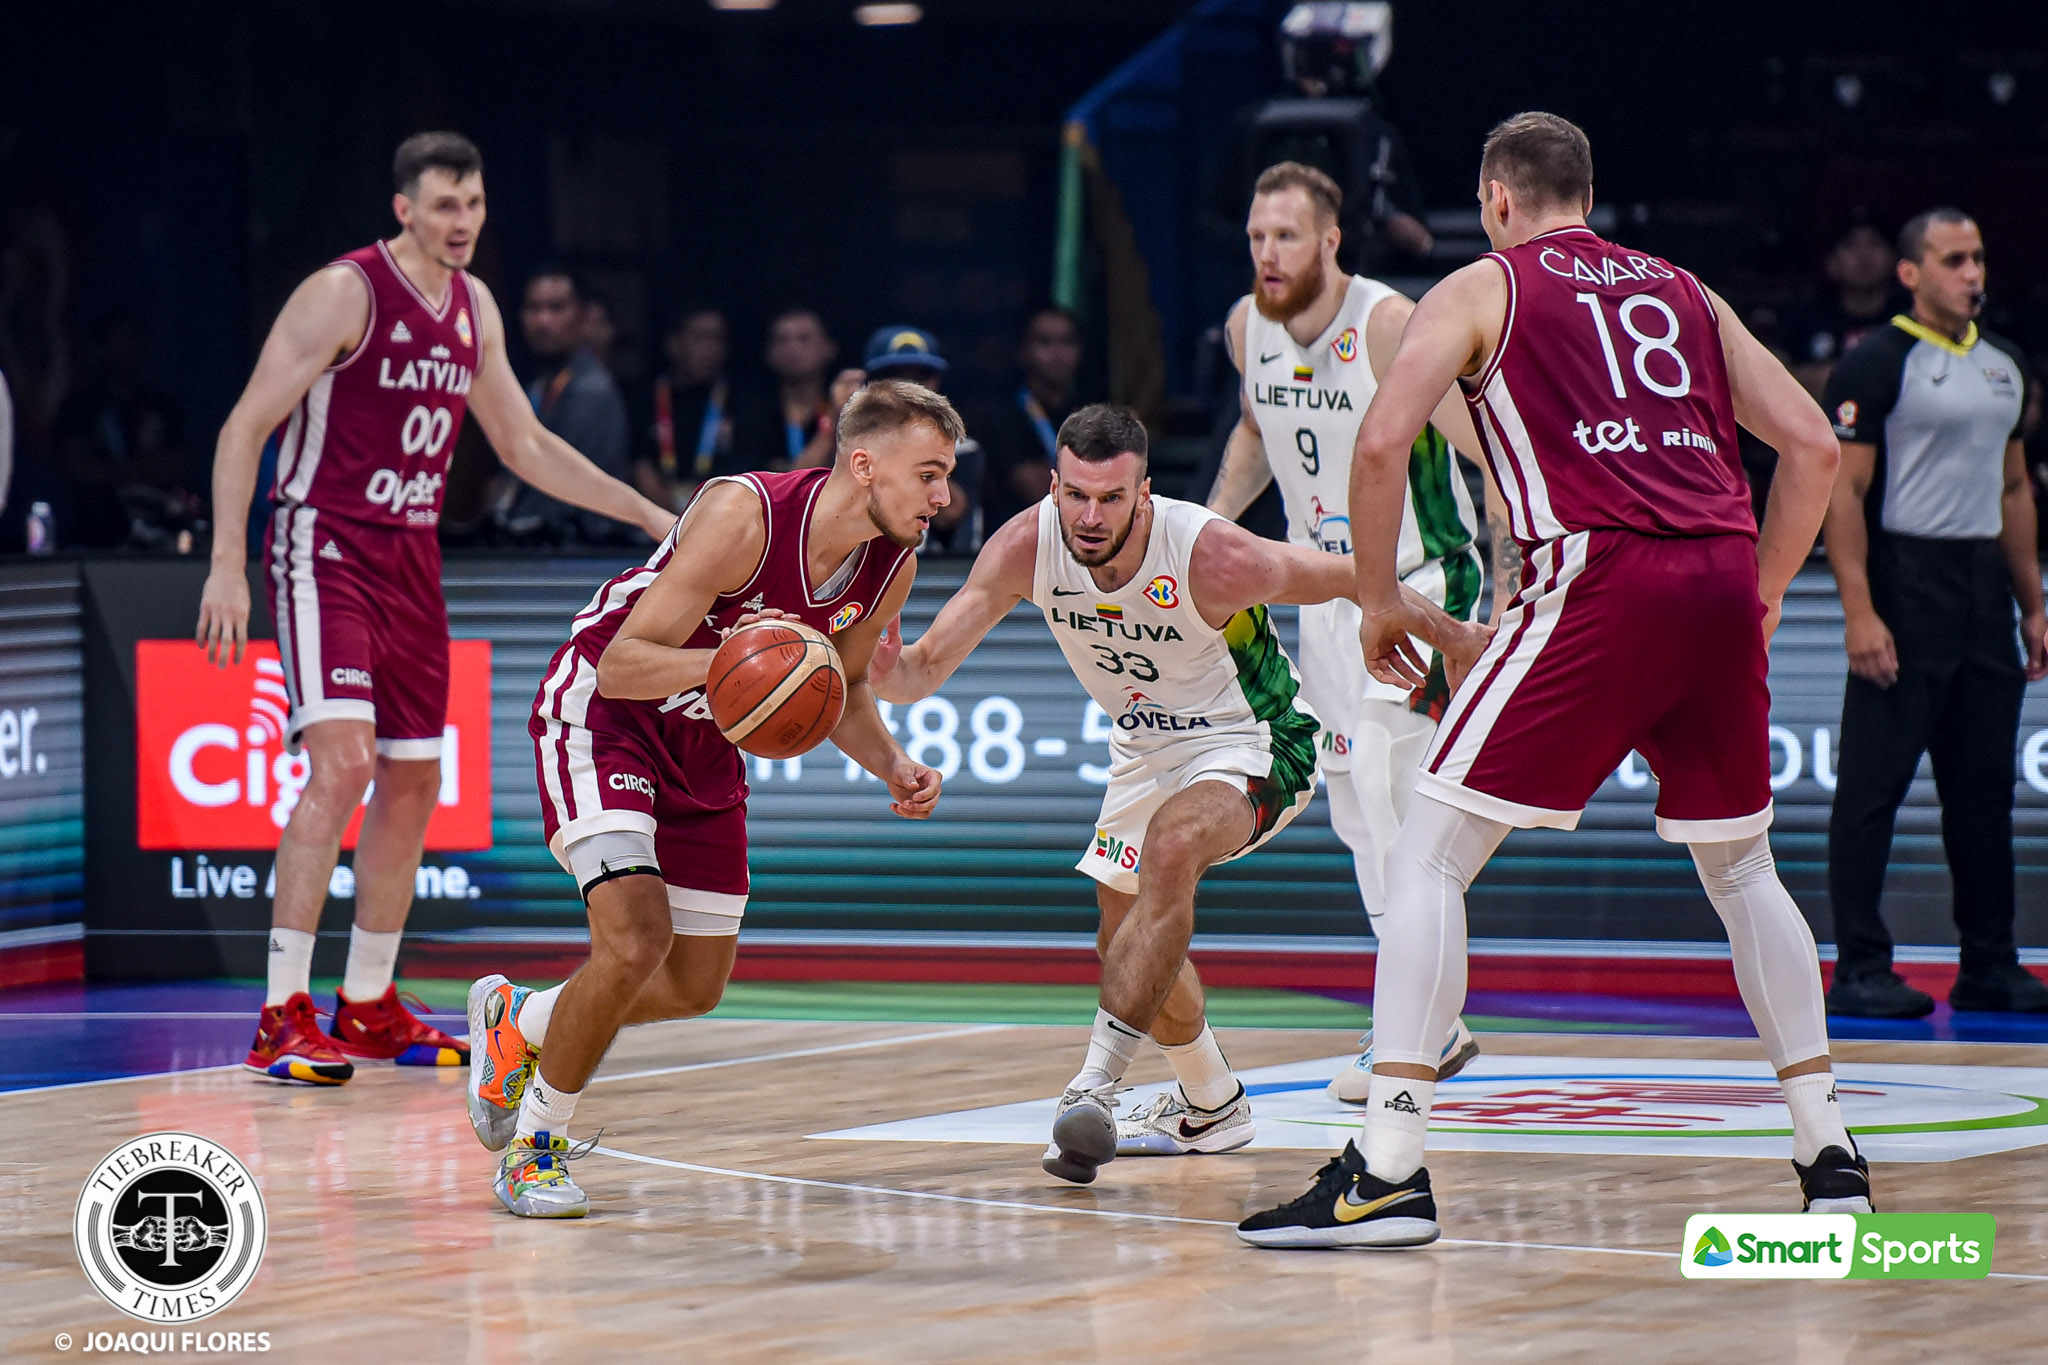 Jonas Valanciunas shares respect for Latvia ahead of fifth place